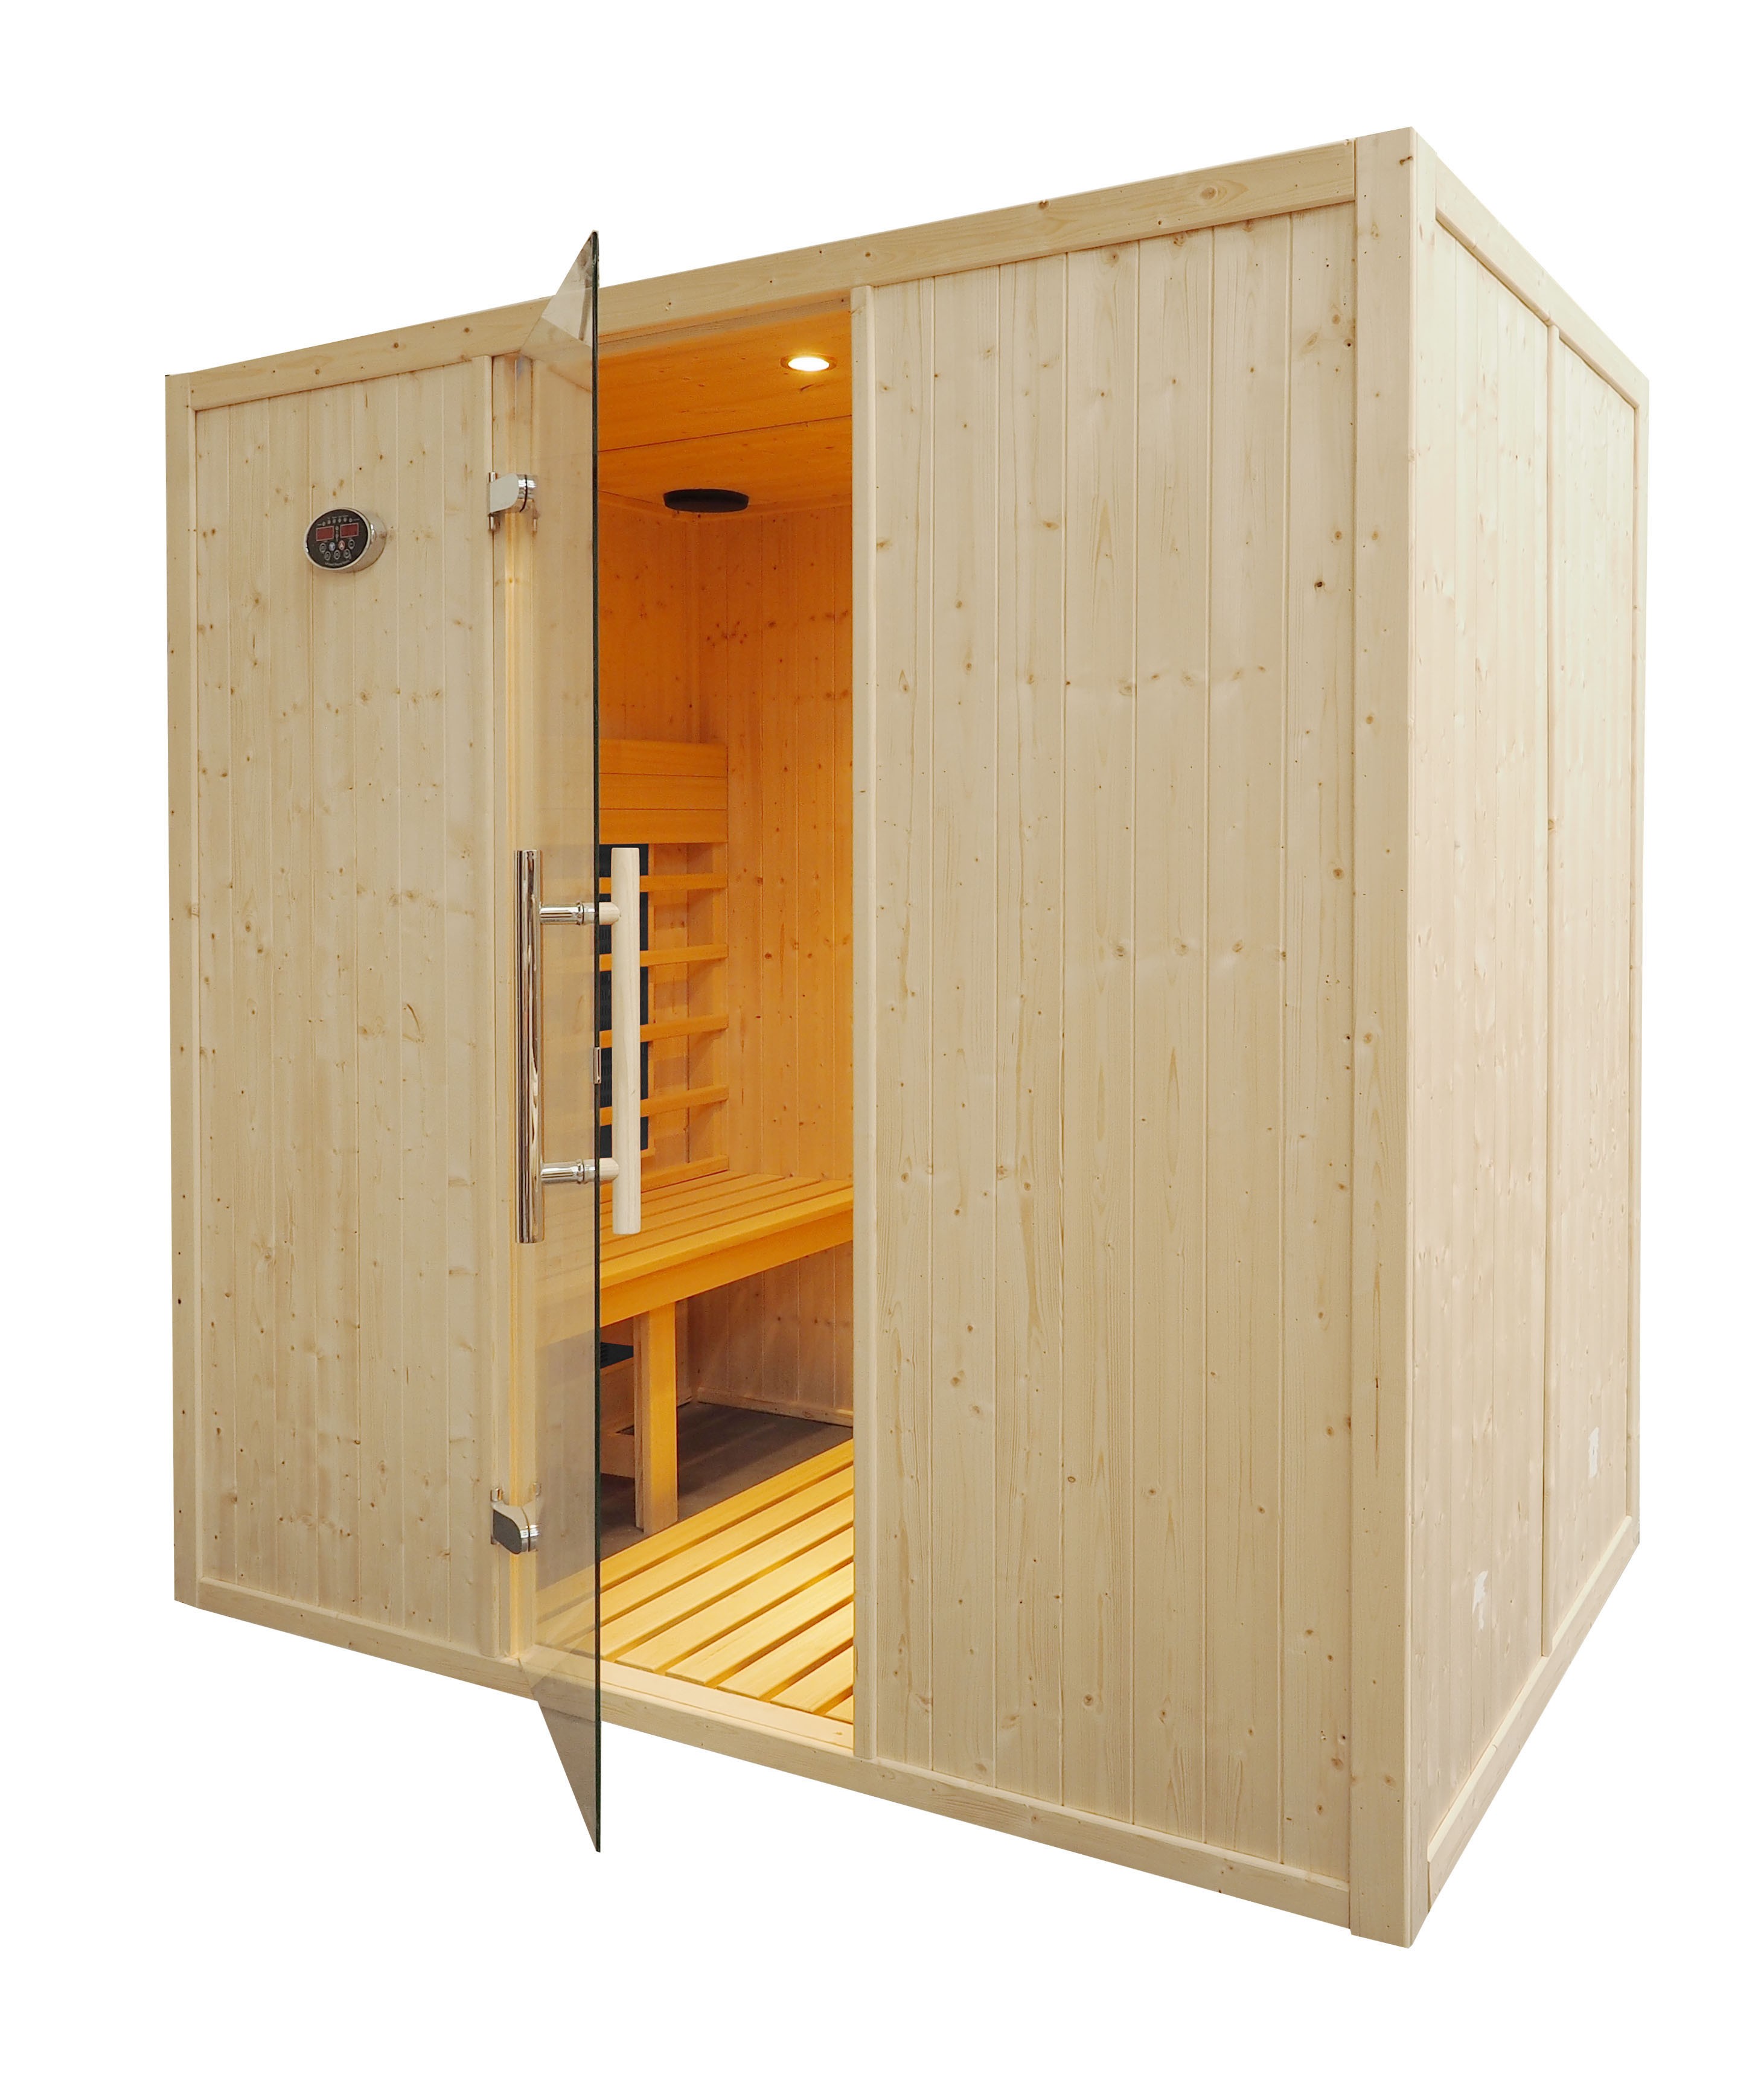 Cabina de sauna infrarrojos - 4 personas - bancos paralelos - IR2030